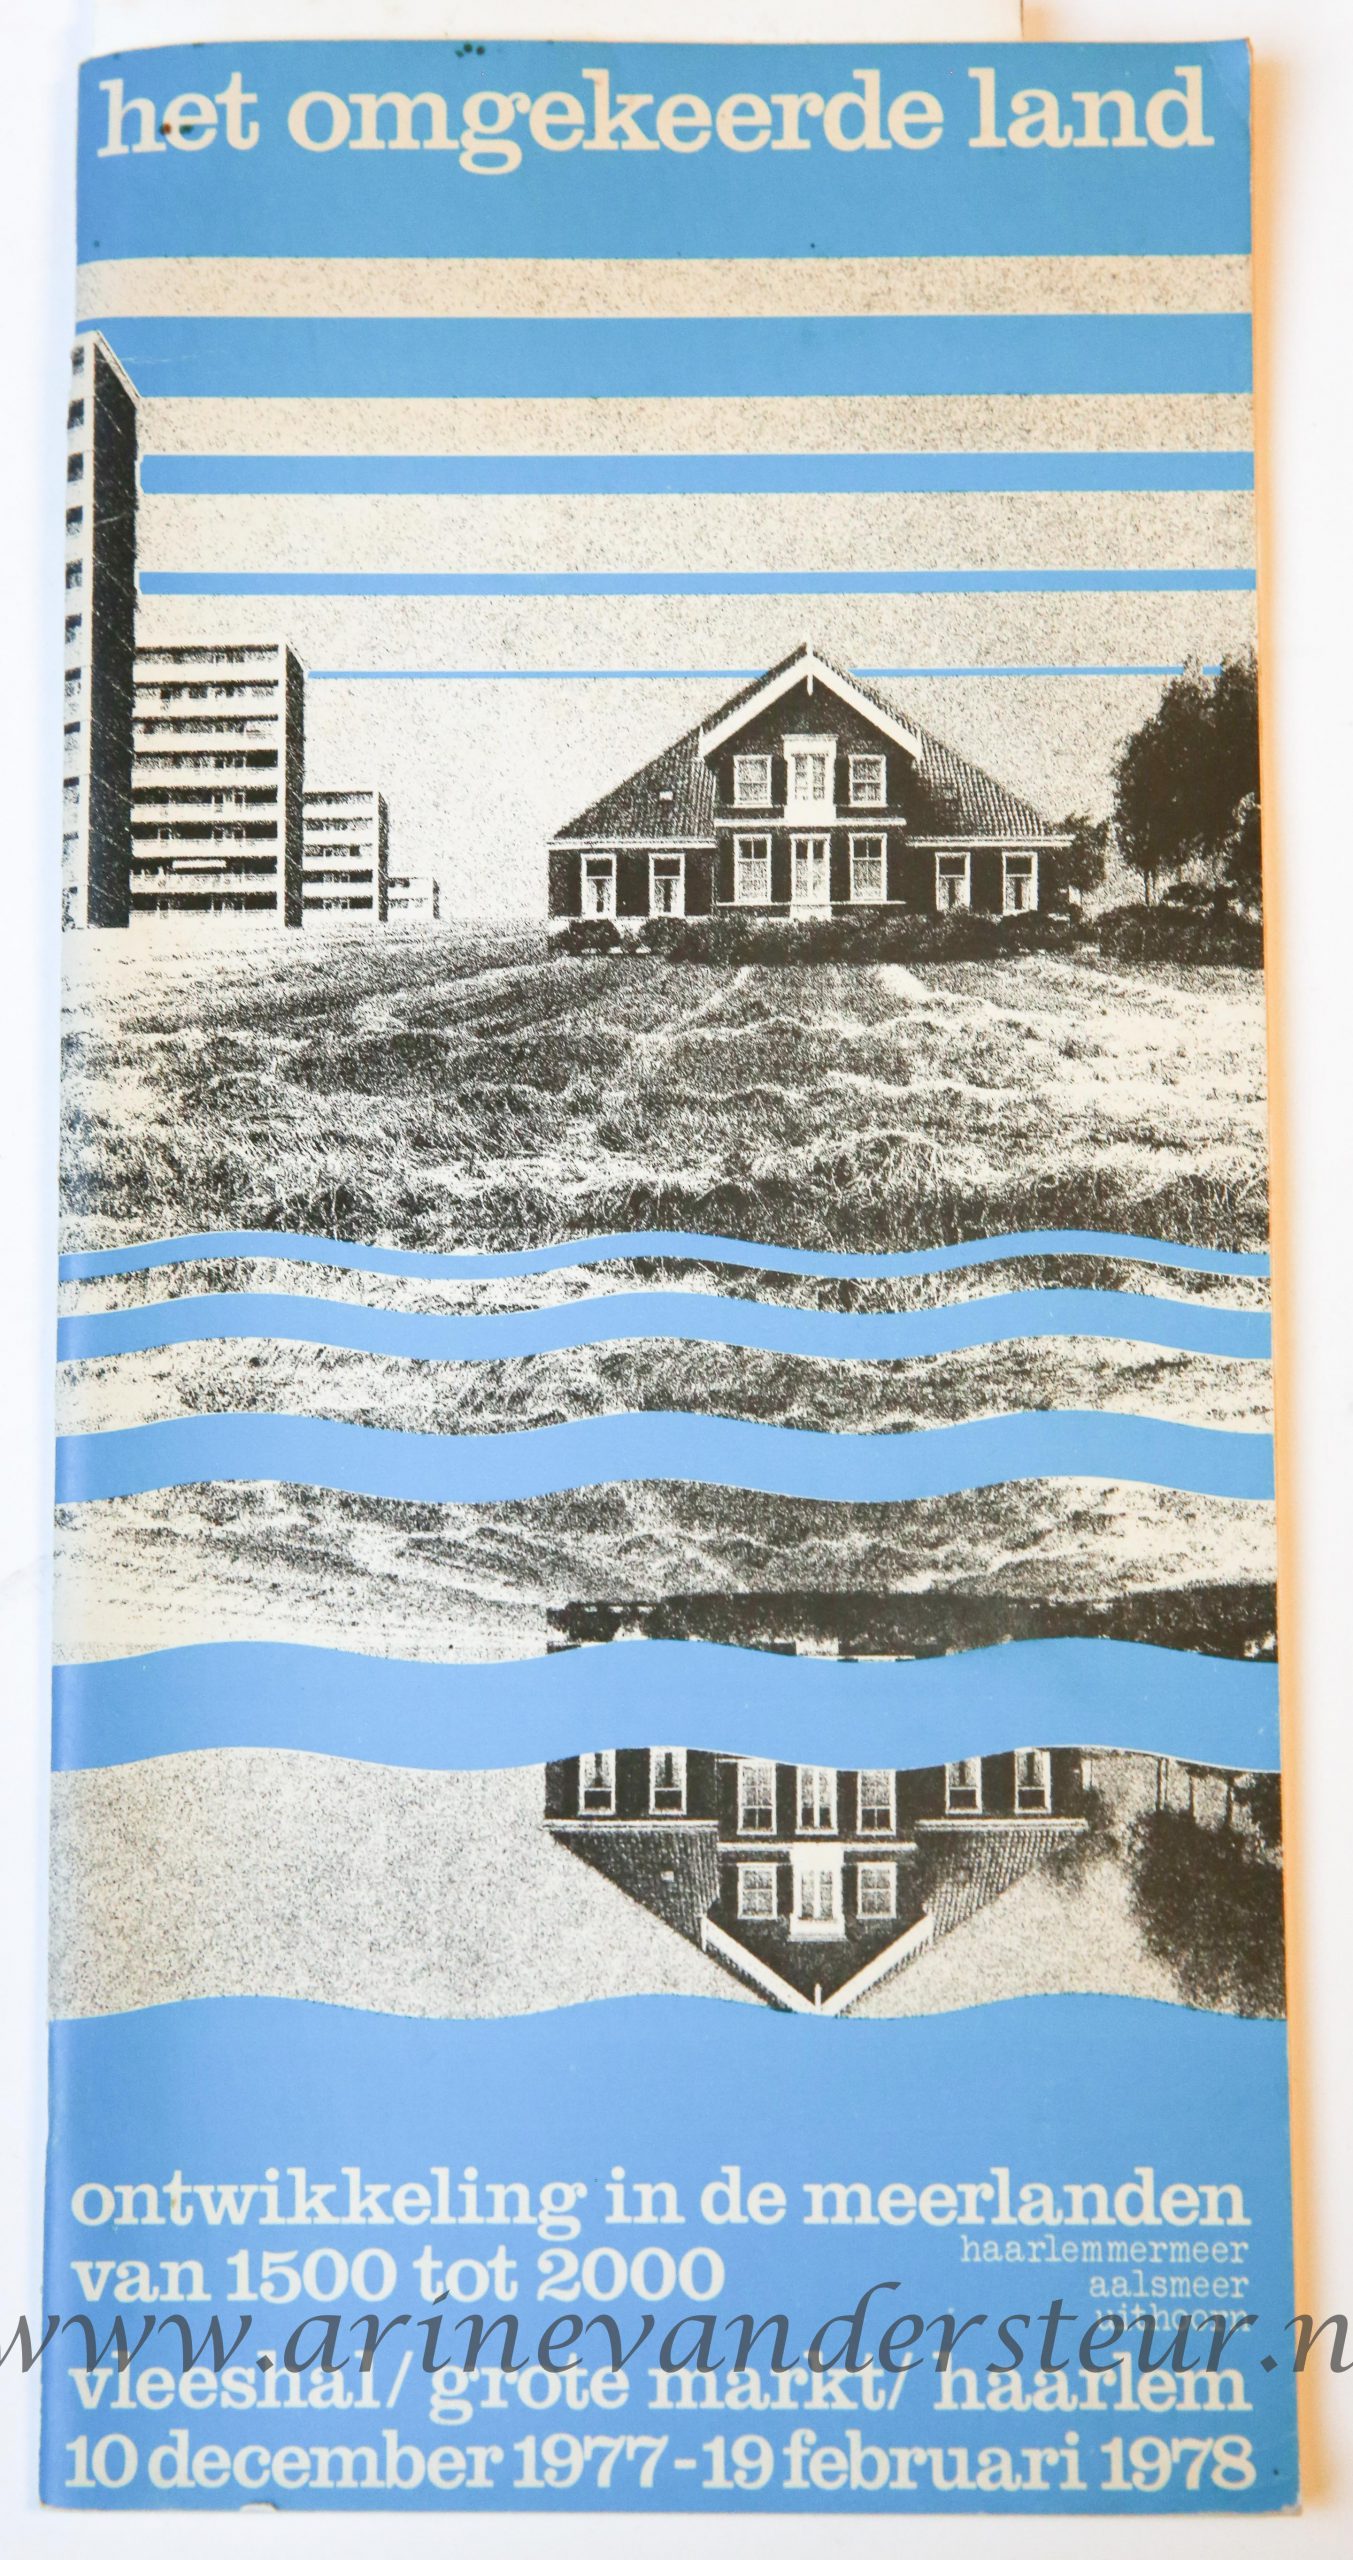 Het omgekeerde land : ontwikkeling in de Meerlanden van 1500 tot 2000, Vleeshal Haarlem, geillustreerd, 32 pp.